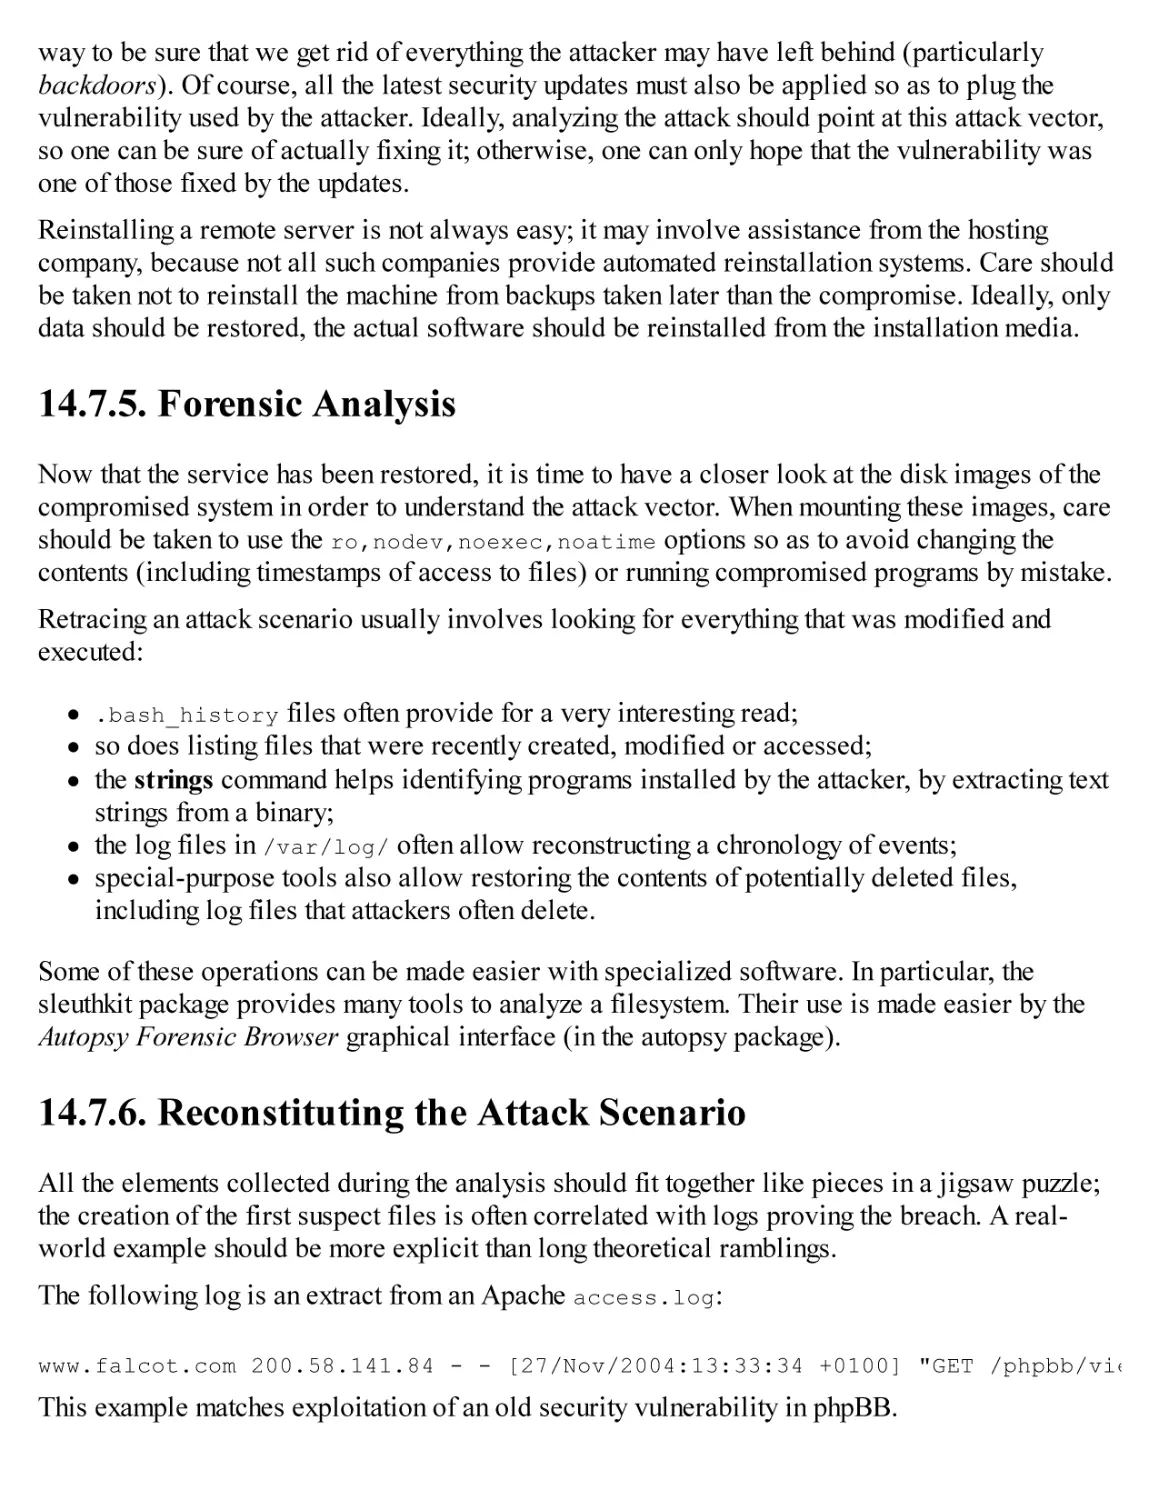 14.7.5. Forensic Analysis
14.7.6. Reconstituting the Attack Scenario